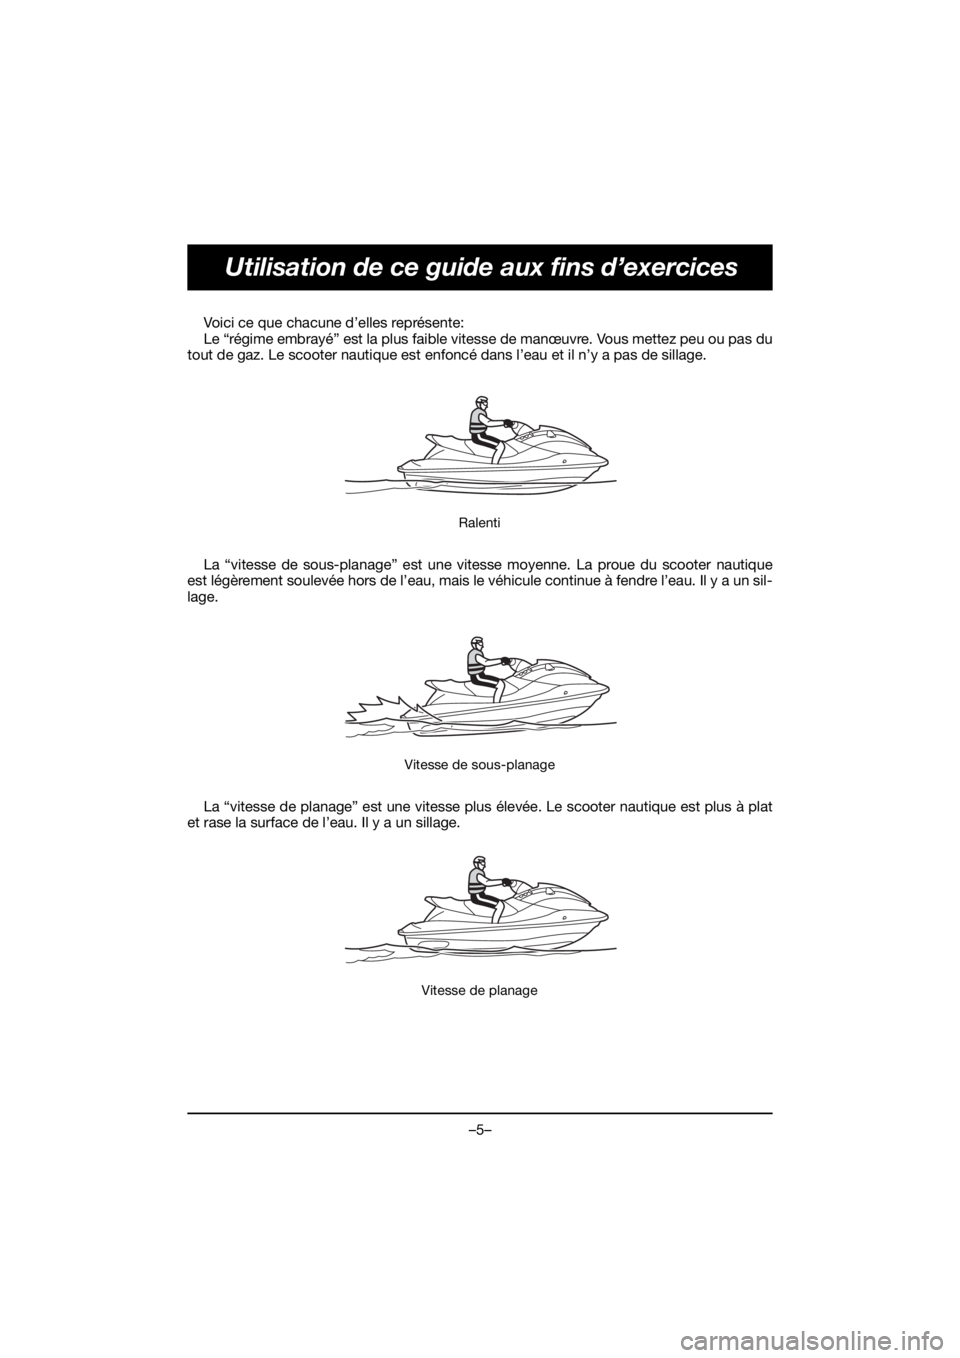 YAMAHA VX CRUISER HO 2020  Manual de utilização (in Portuguese) –5–
Utilisation de ce guide aux fins d’exercices
Voici ce que chacune d’elles représente: 
Le “régime embrayé” est la plus faible vitesse de manœuvre. Vous mettez peu ou pas du
tout de